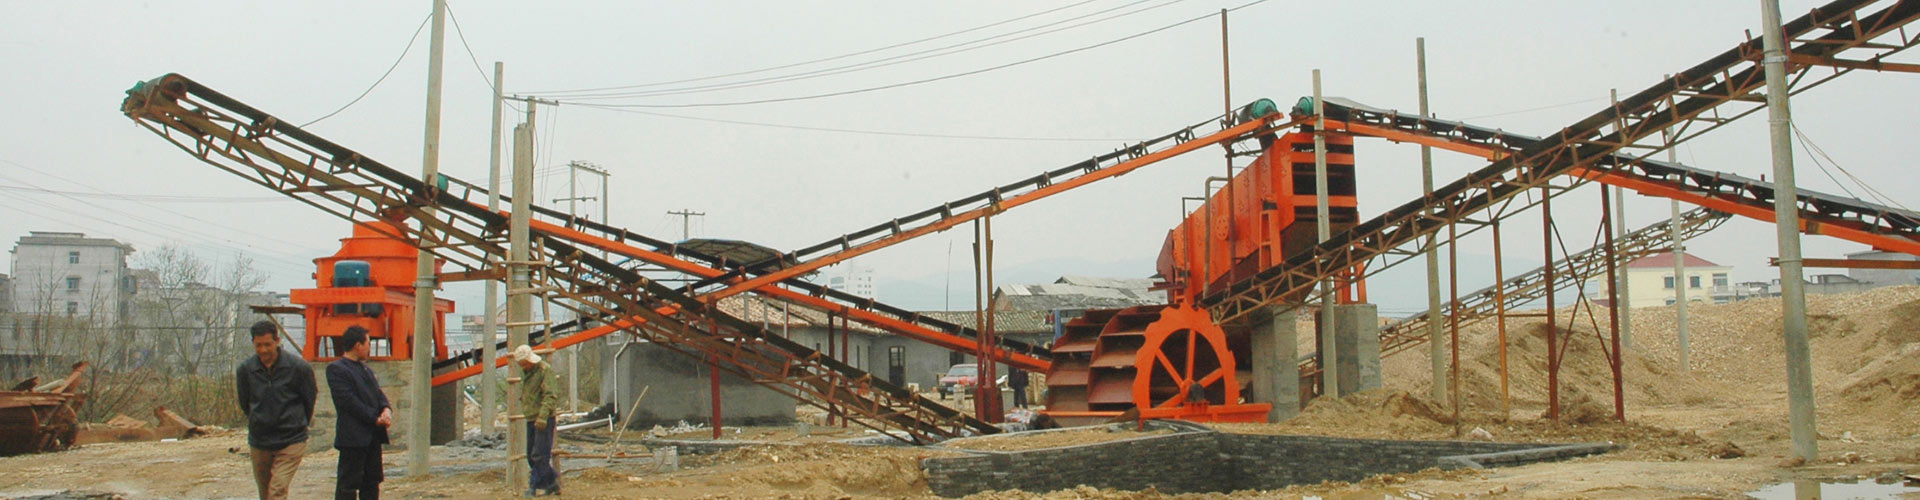 烏茲別克斯坦時產20噸滑石破碎生產線 - 雷蒙磨